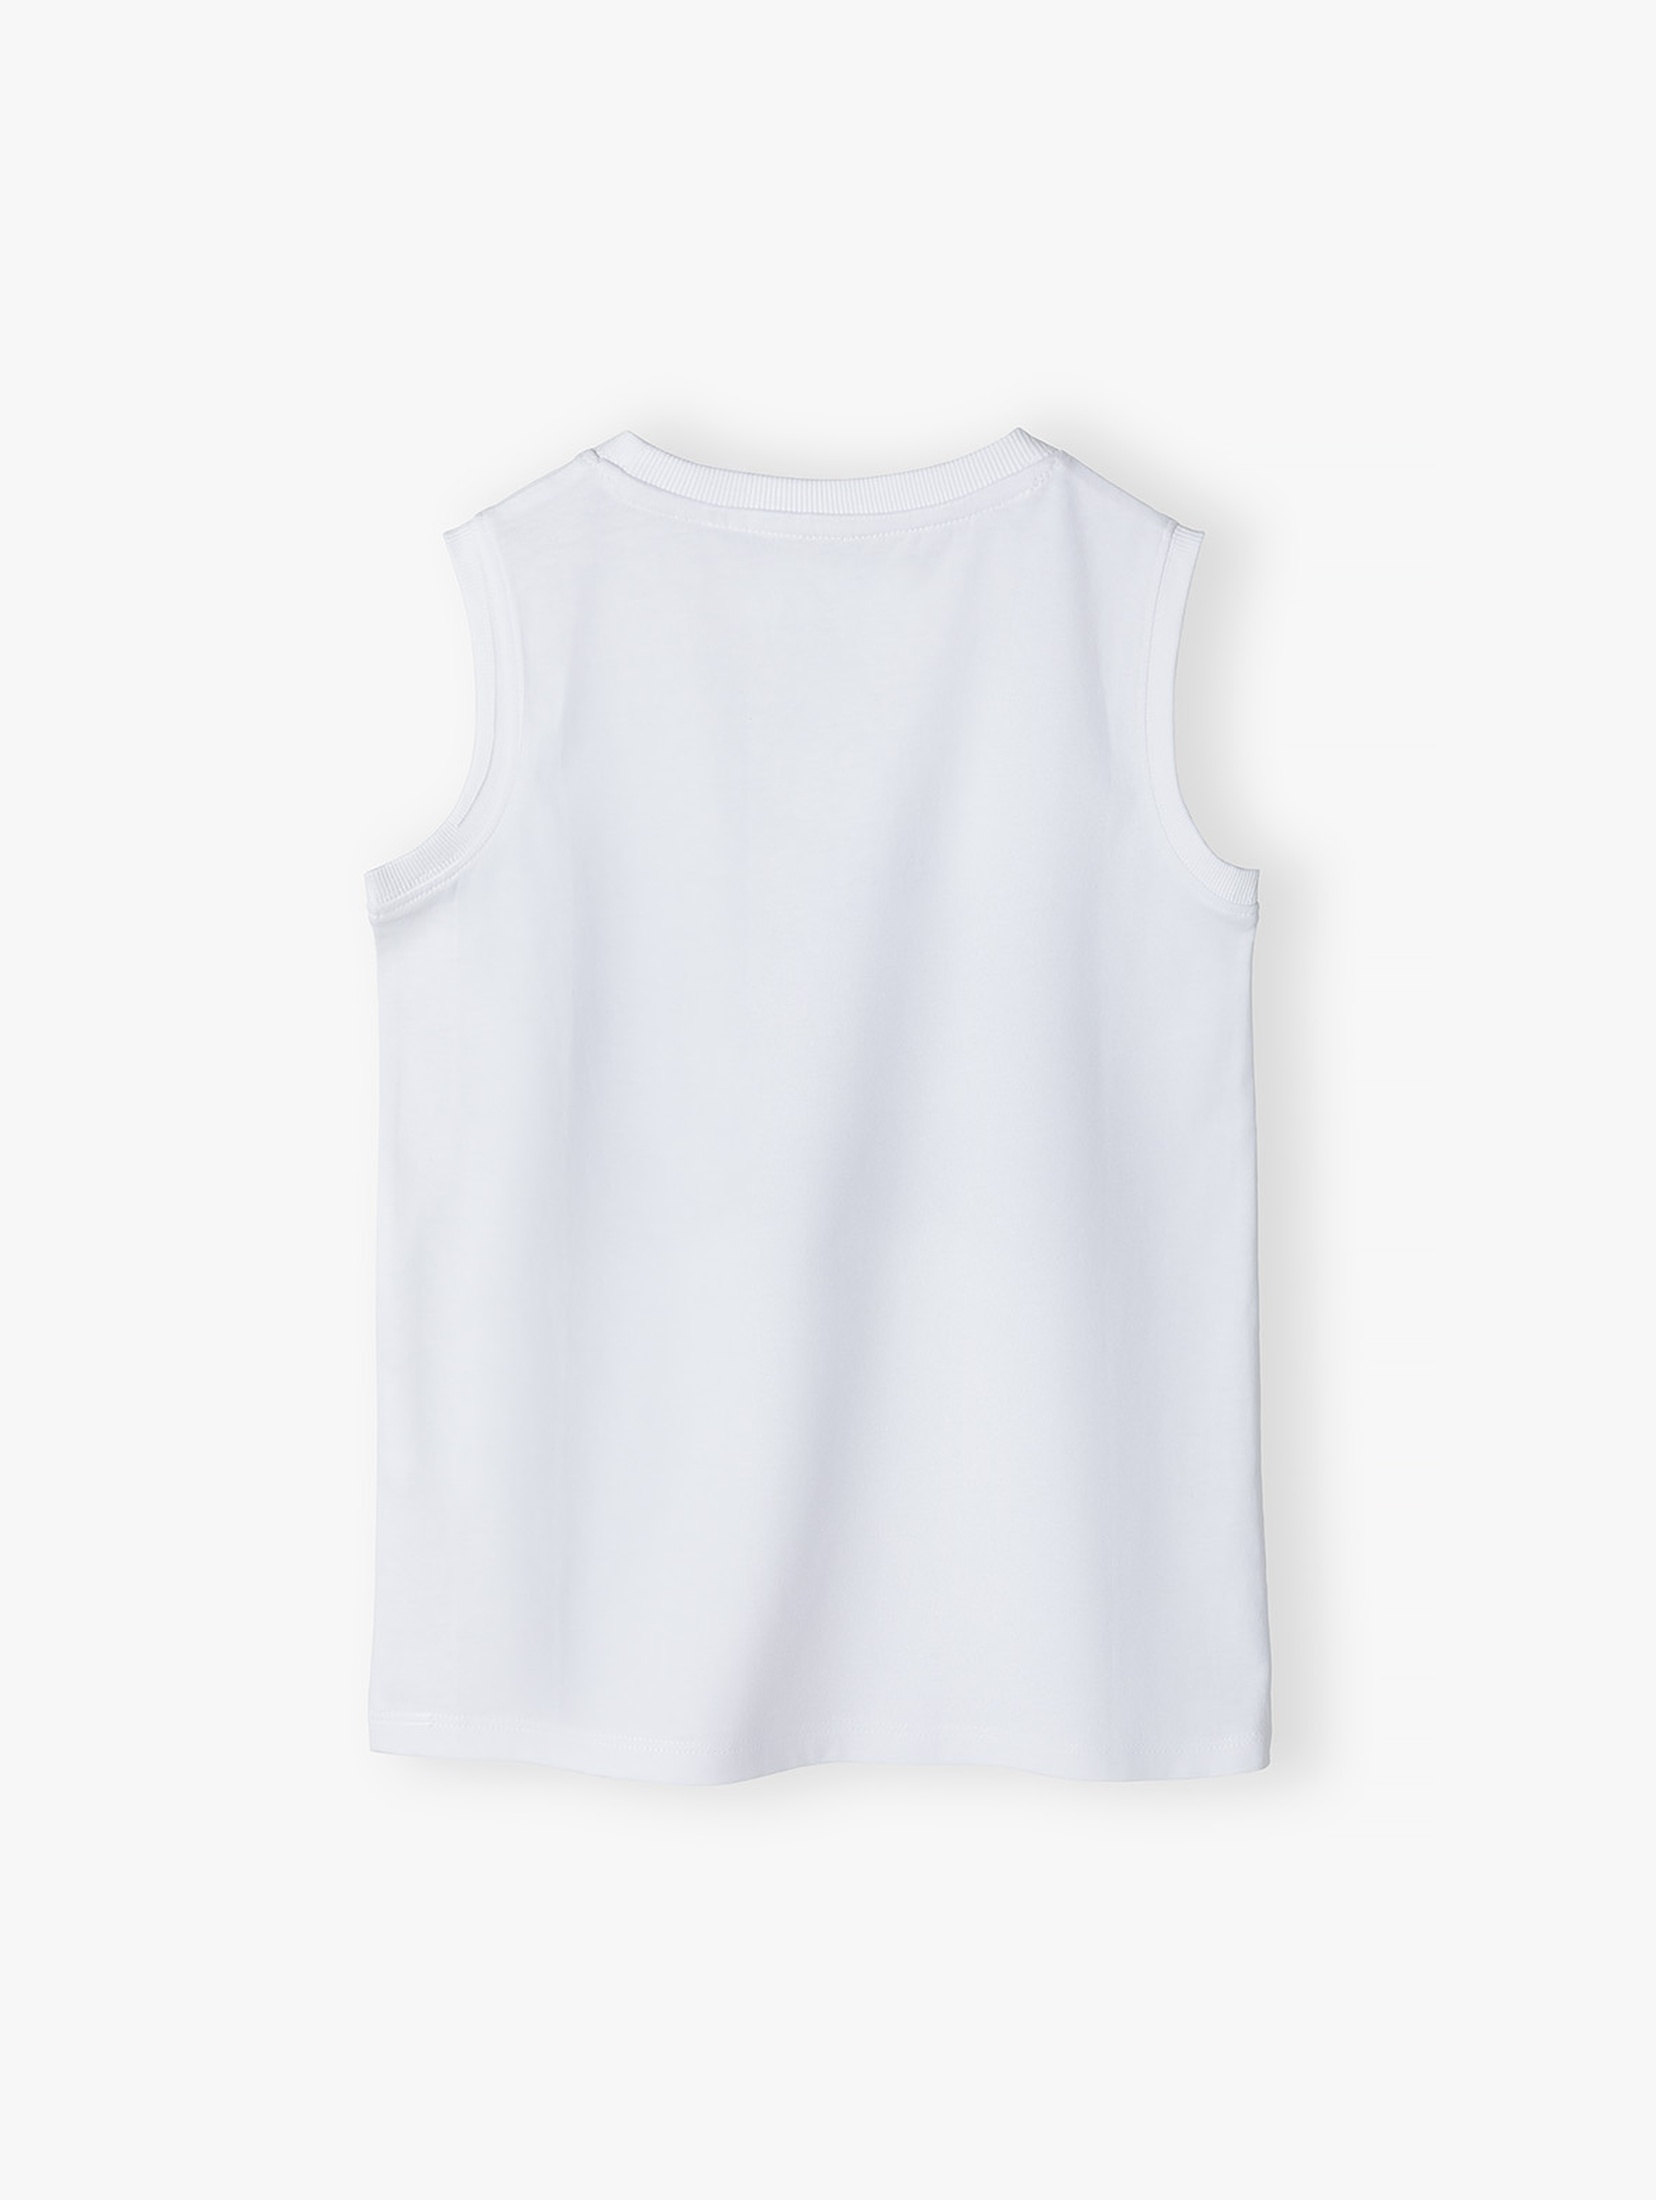 Biała koszulka dla chłopca na lato z bawełny